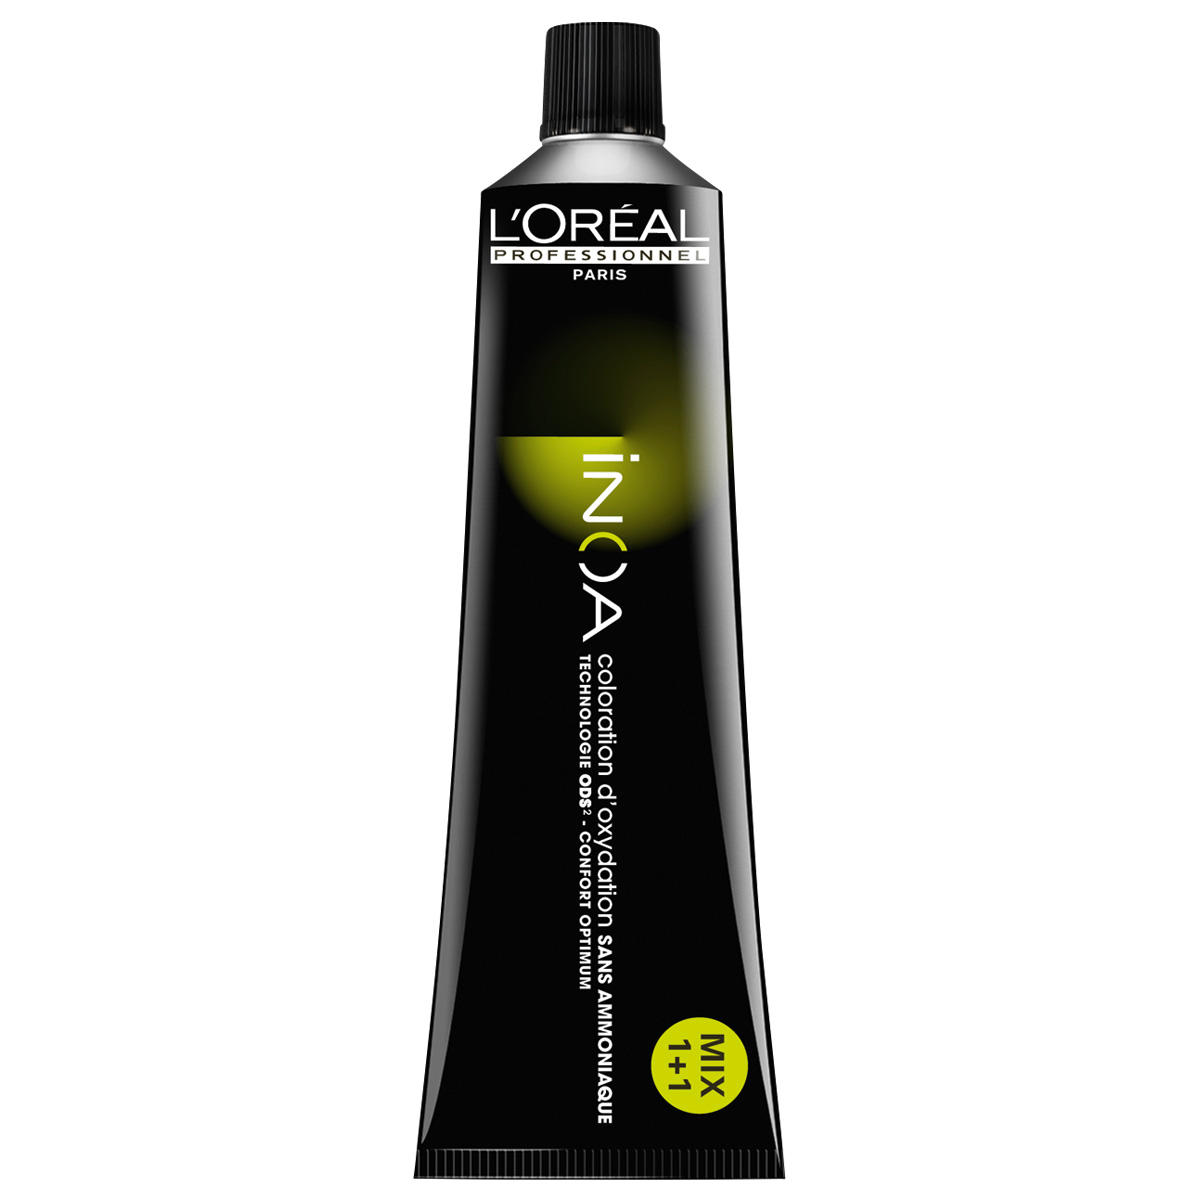 L'Oréal Professionnel Paris Coloration 10.13 Rubio platino ceniza oro, tubo 60 ml